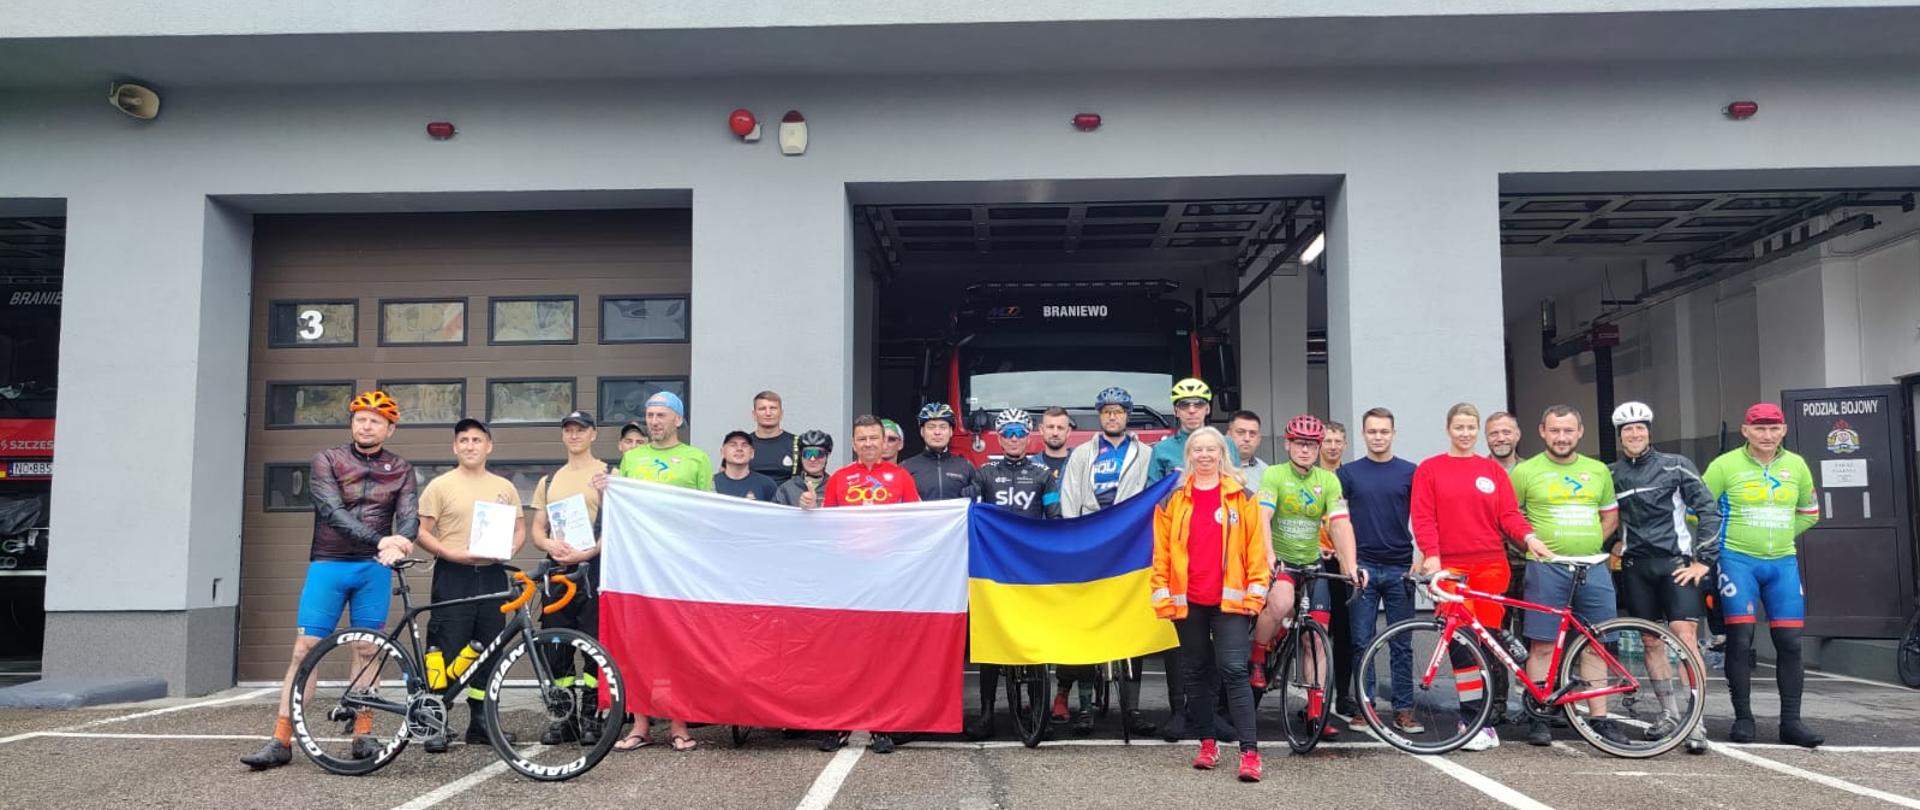 Na zdjęciu na tle garaży bojowych straży pożarnej, uczestnicy rajdu rowerowego. Na wprost stoi kilkudziesięciu uczestników rajdu, kolorowo ubrani, widać rowery w rekach trzymają flagę Polski i Ukrainy.